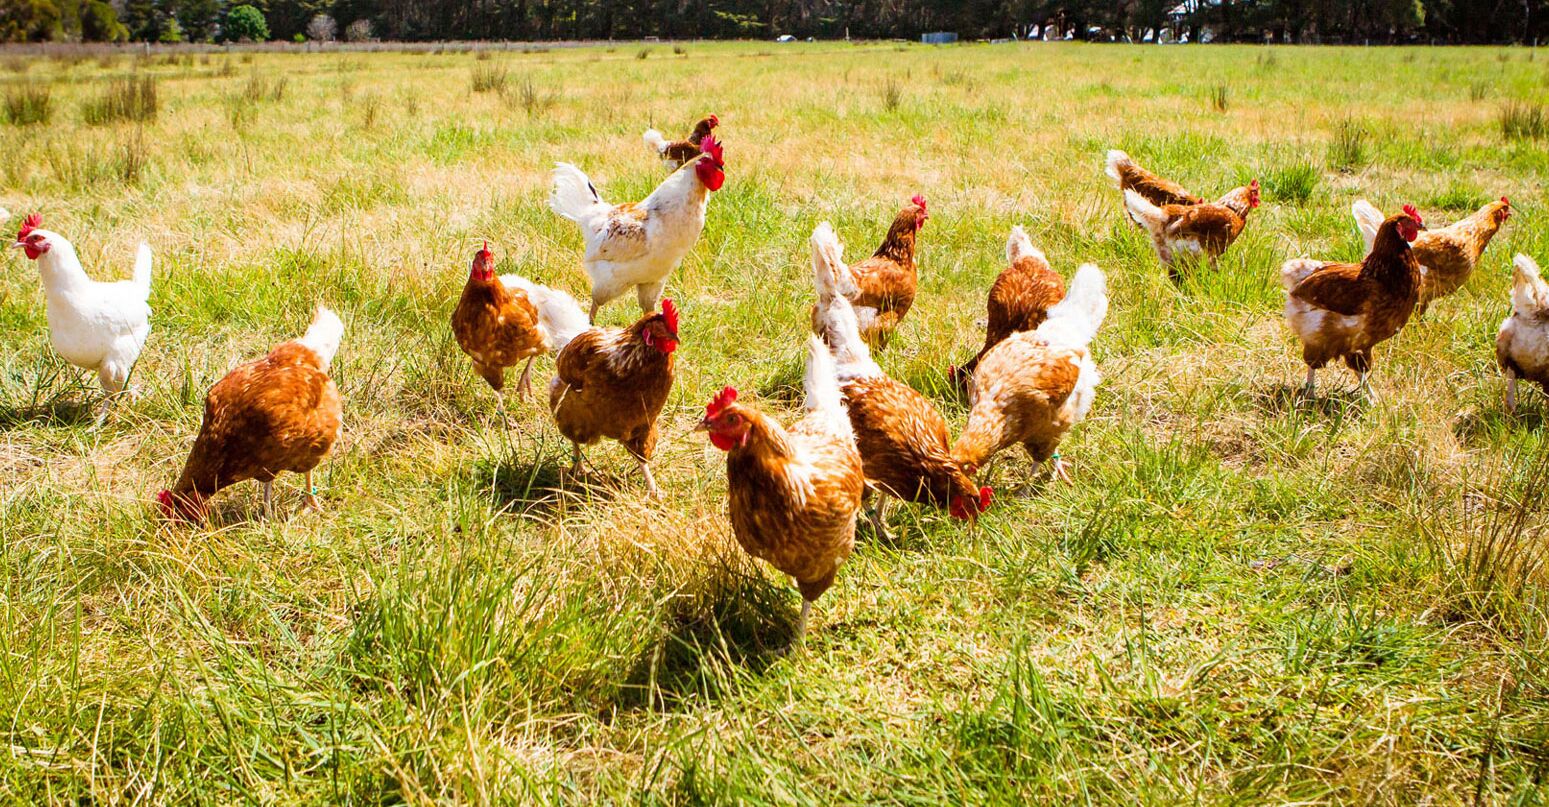 Zahlreiche Hühner laufen auf einer Wiese herum und genießen das sonnige Wetter